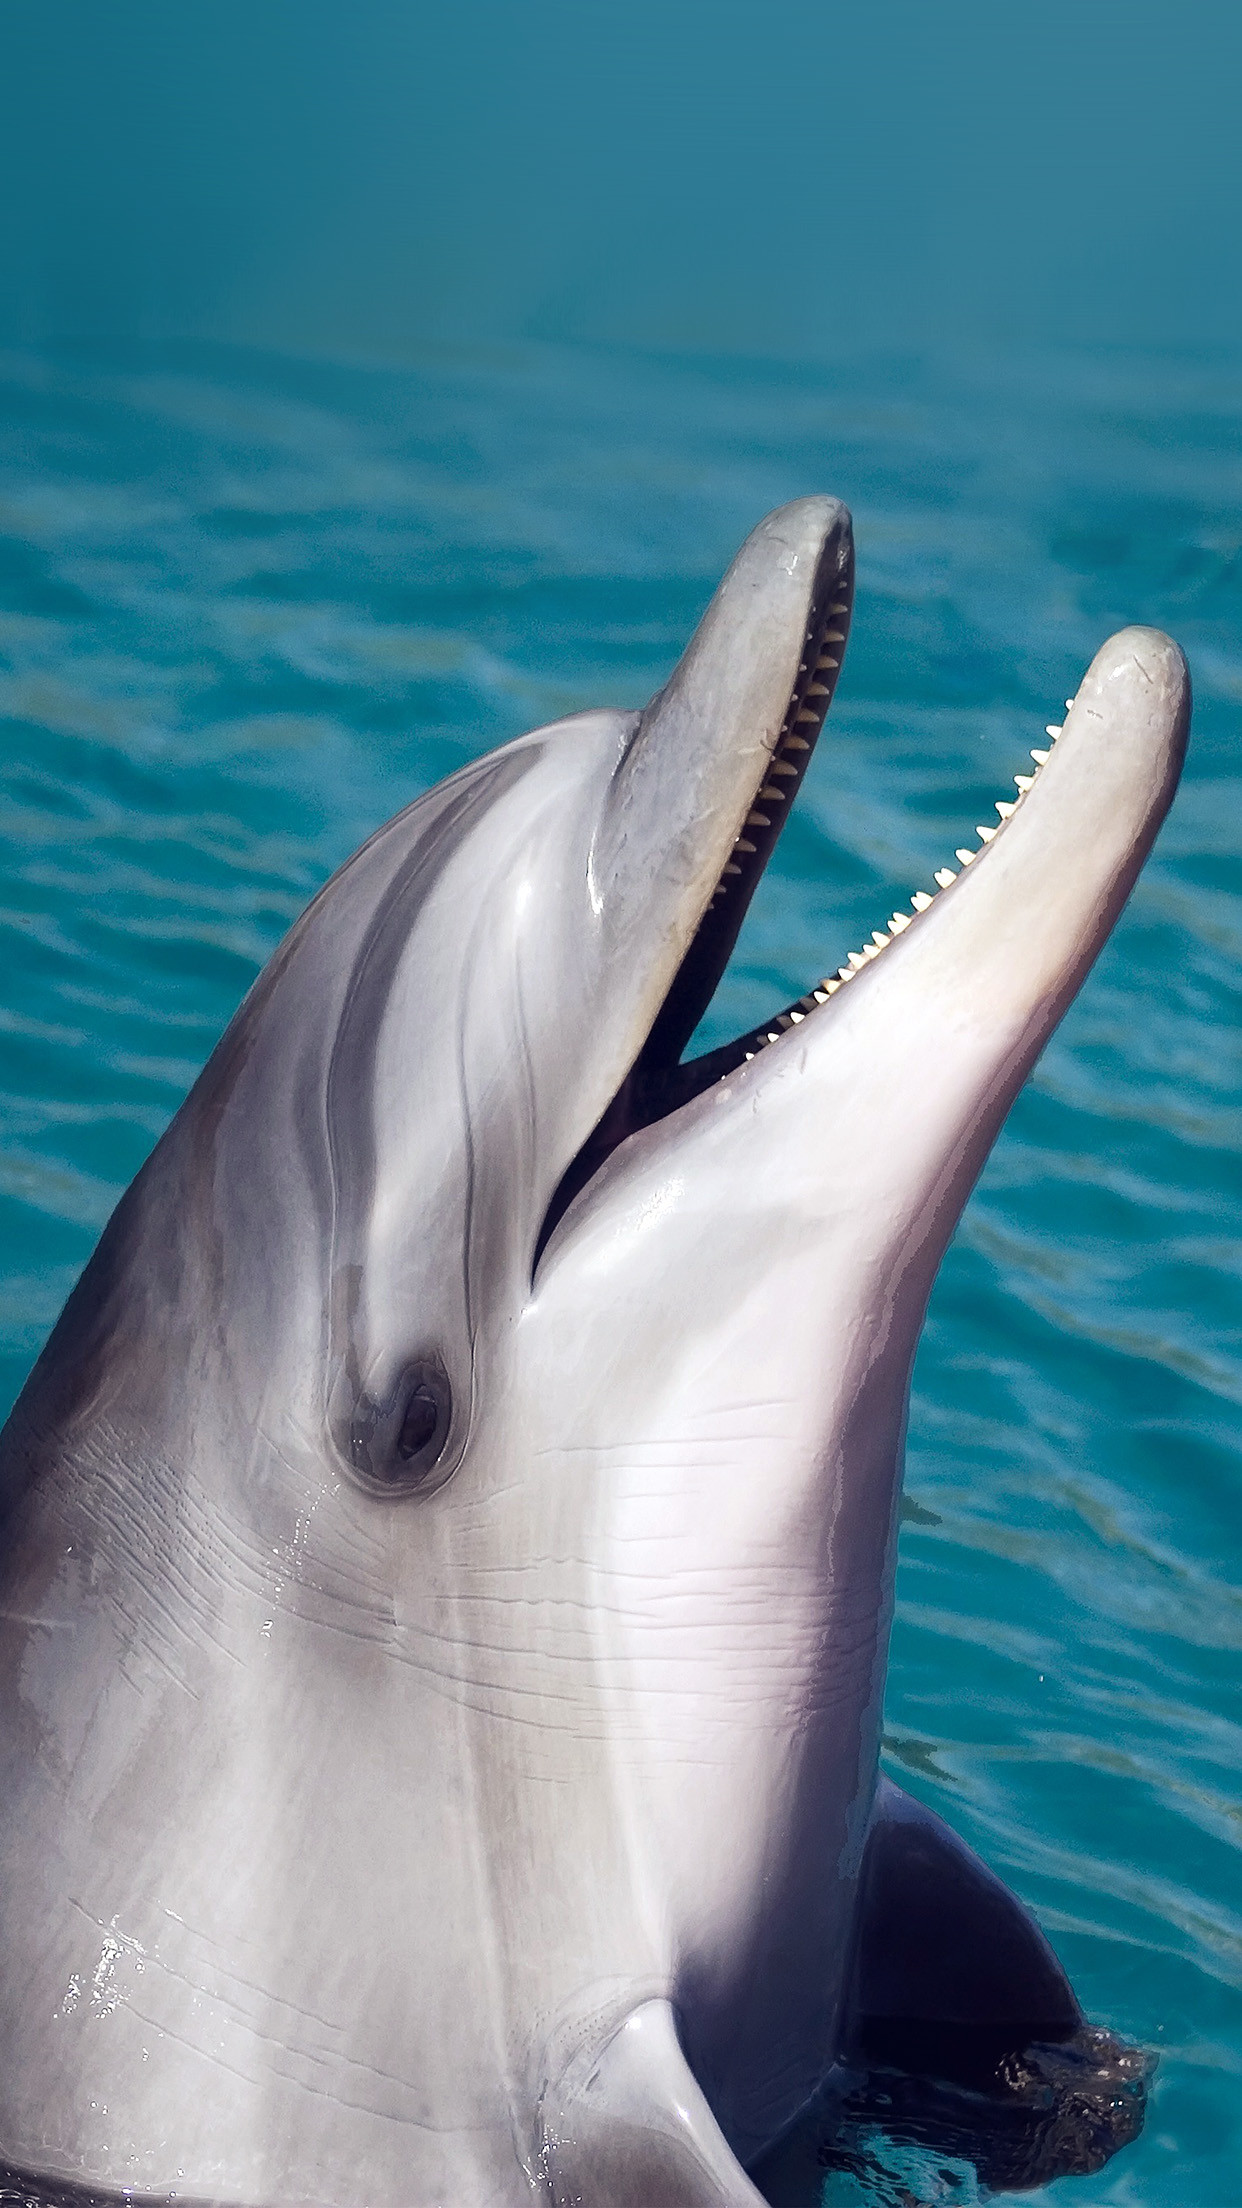 fotos lindas para fondo de pantalla,delfín nariz de botella común,delfín,delfín nariz de botella,mamífero marino,delfín común de pico corto